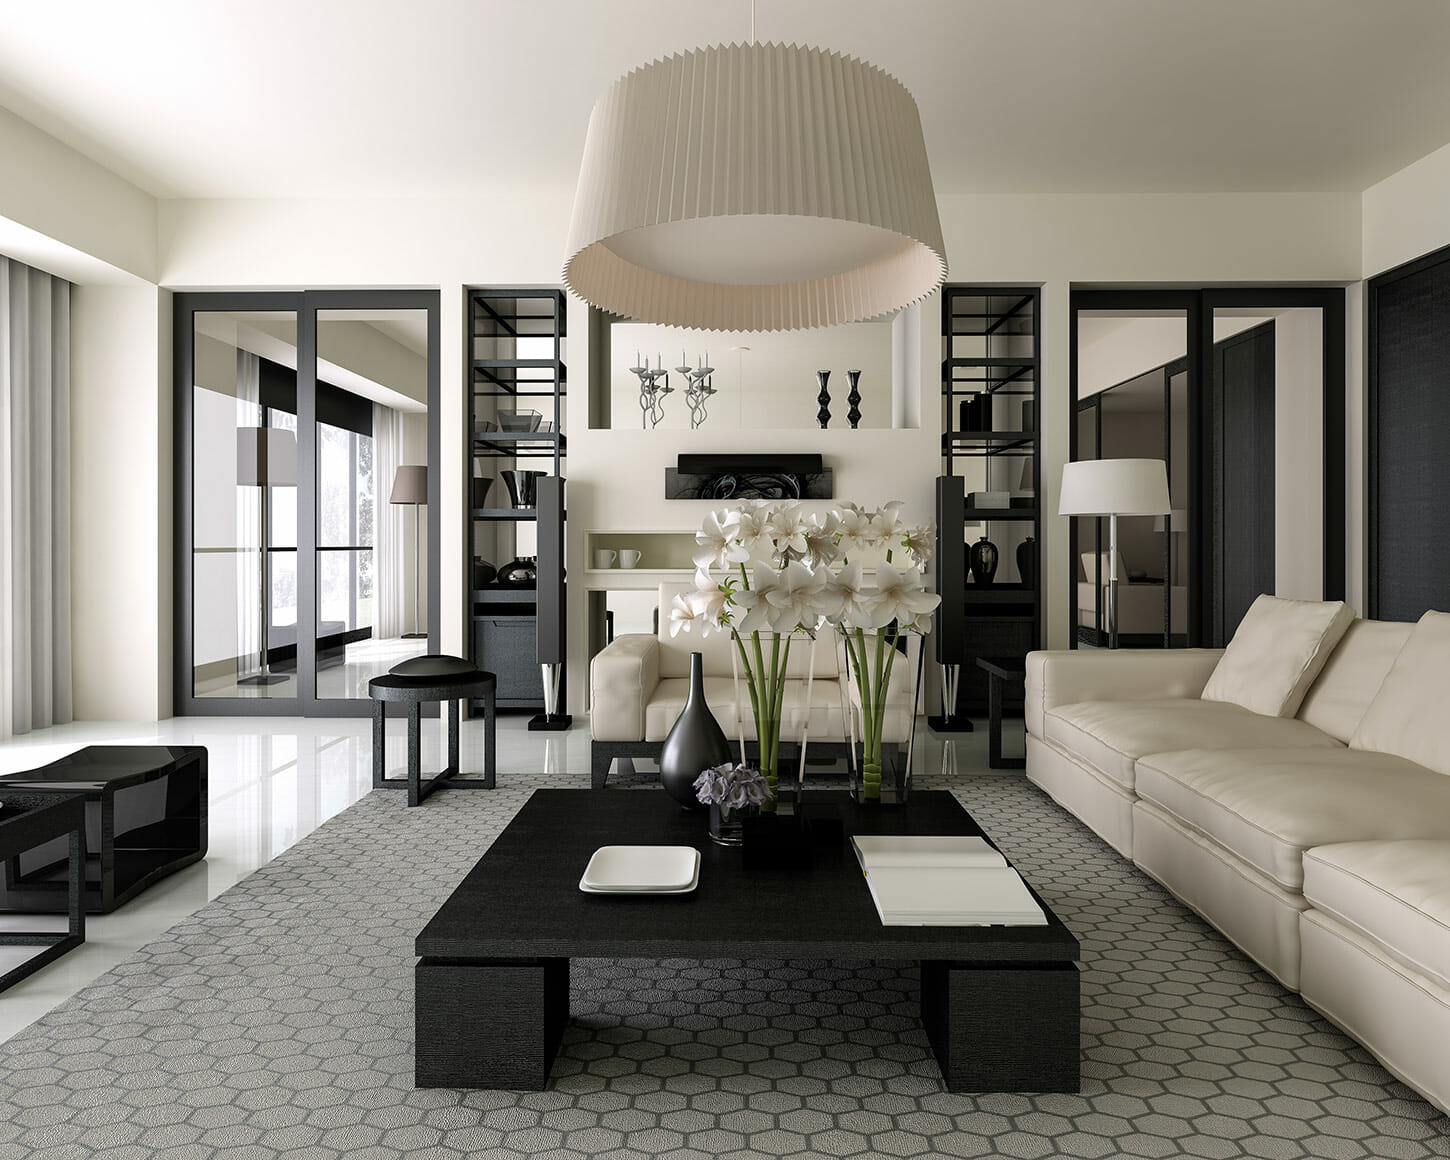 classic and chic: black and white living room decor - decorilla